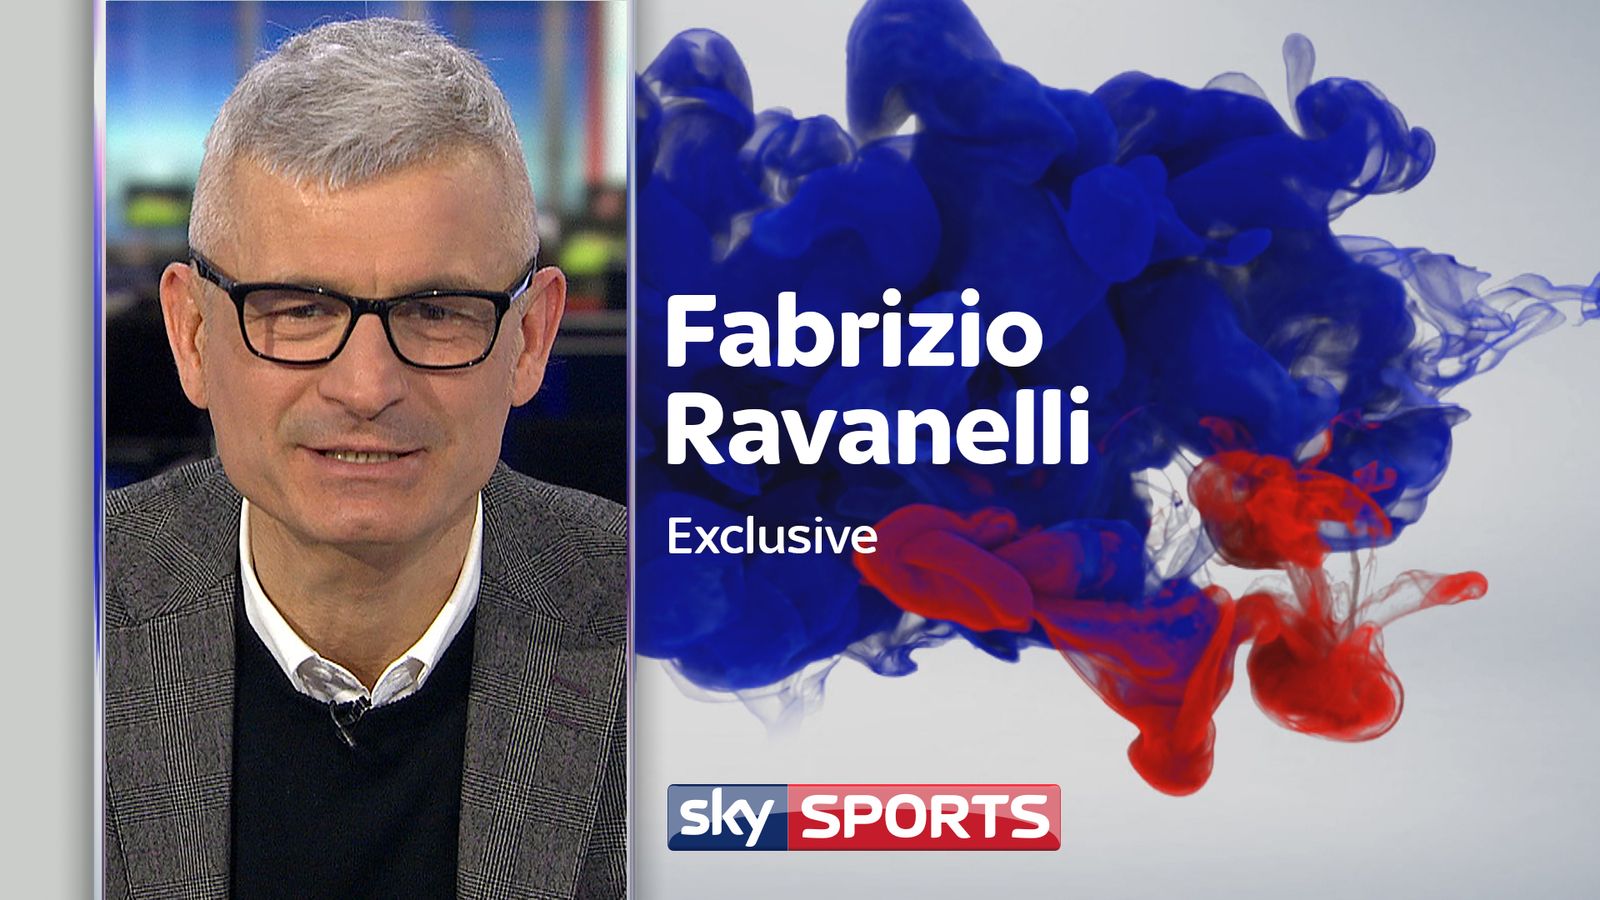 Fabrizio Ravanelli recalls his fantastic spell as a Juventus